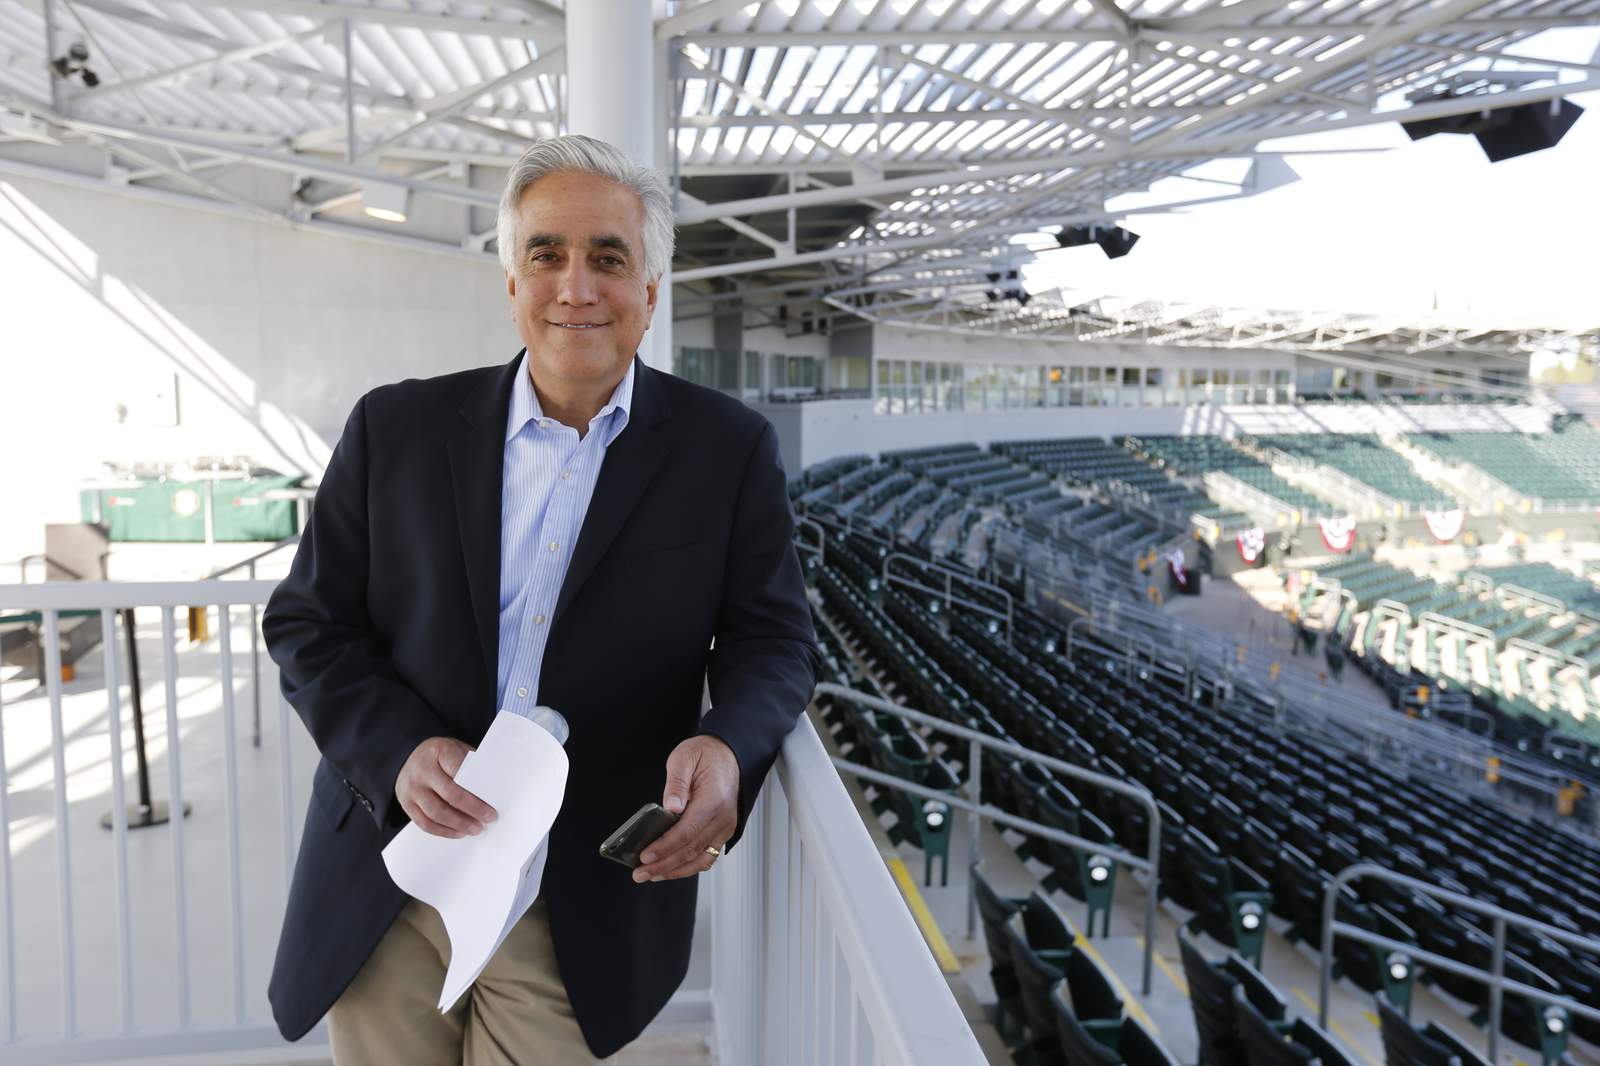 Pedro Gomez, ESPN reporter and Miami native, dead at 58